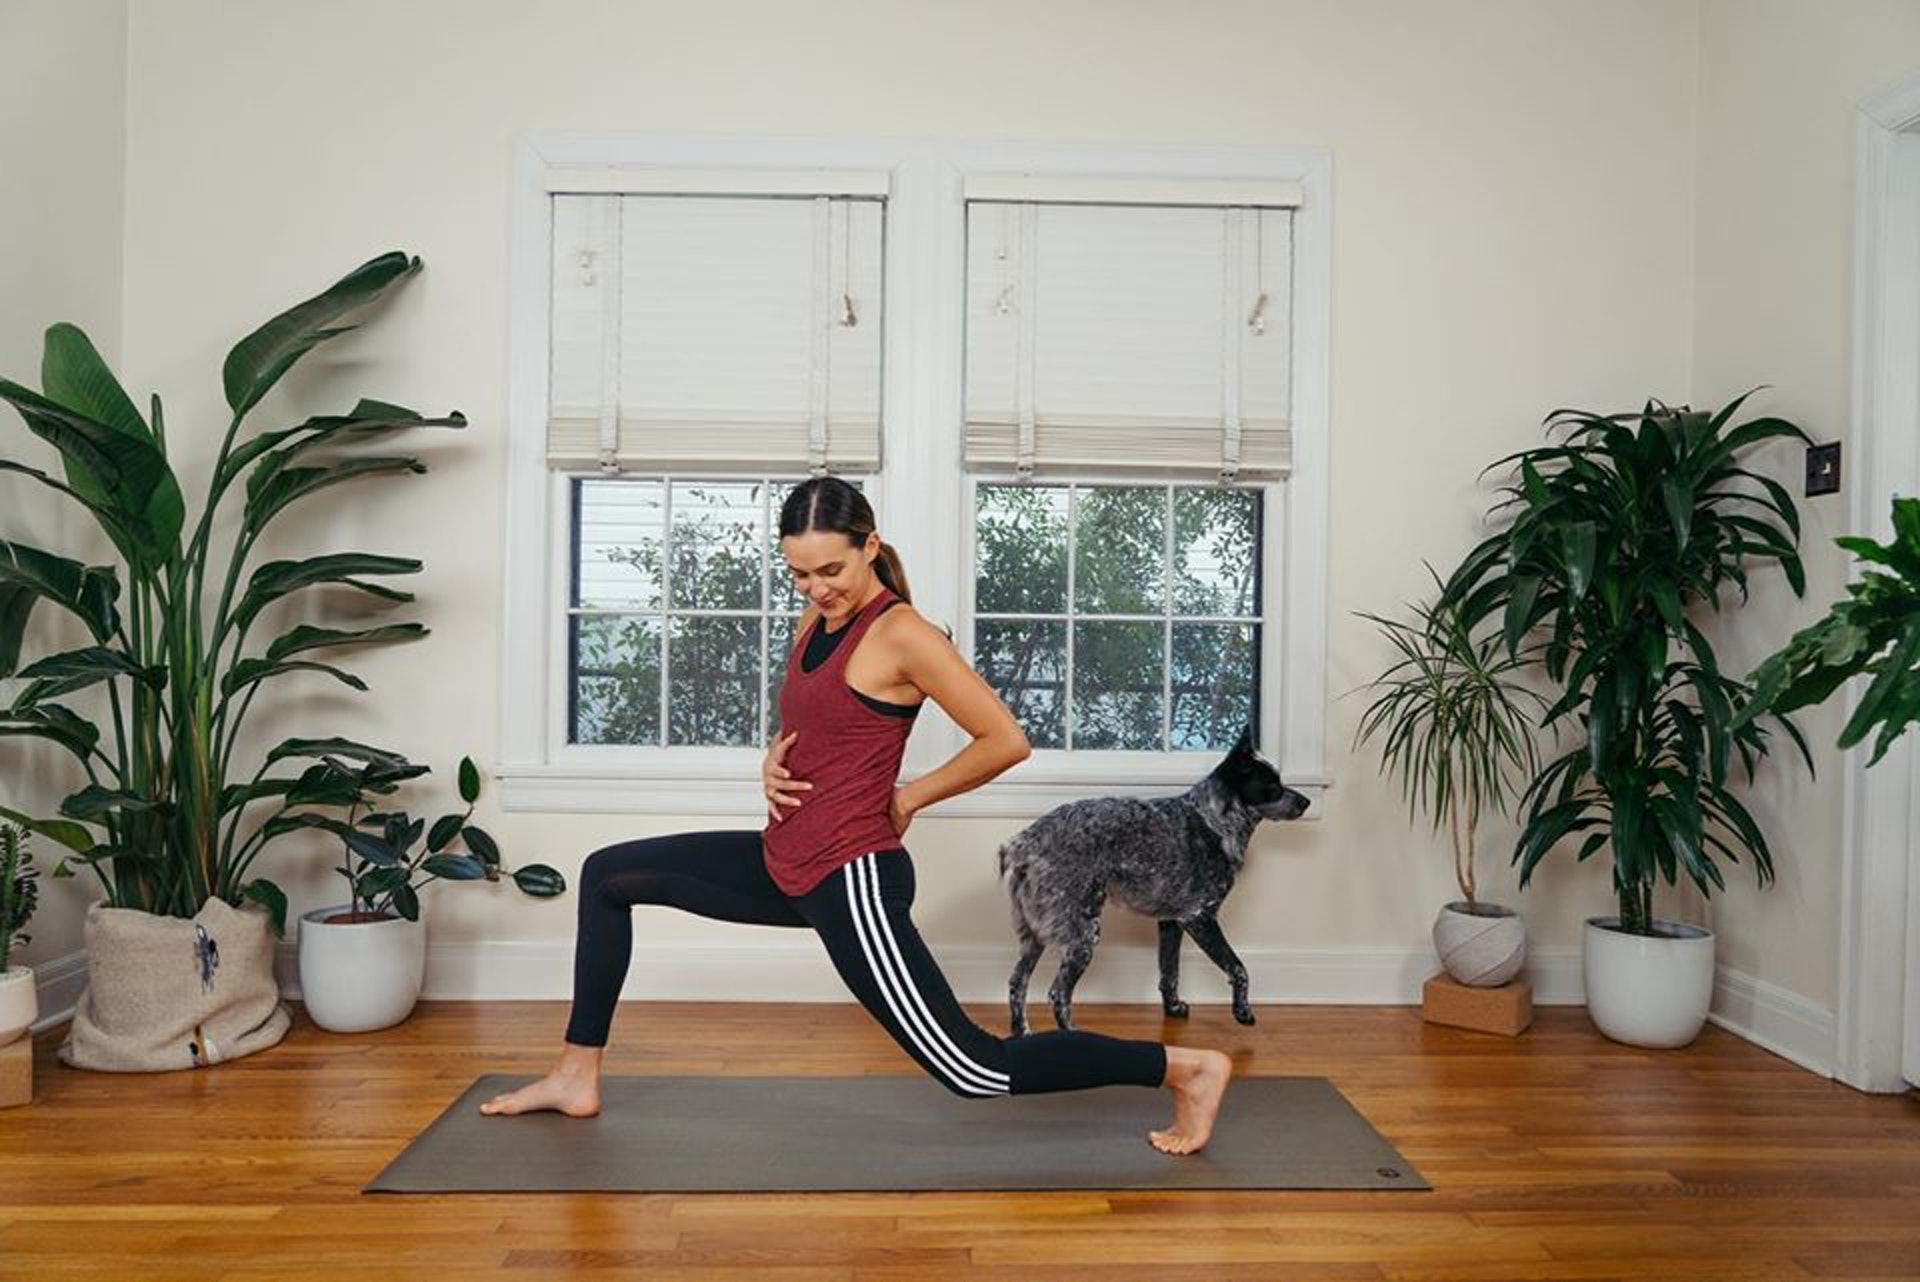 「Yoga With Adriene」勝在夠「慢」，每個動作在停留良久，讓觀眾深入地「拉筋拉個飽」，筆者覺得那很適合工作完畢後，做做瑜珈，分隔工作與休息的時間。（Yoga With Adrien@Facebook）